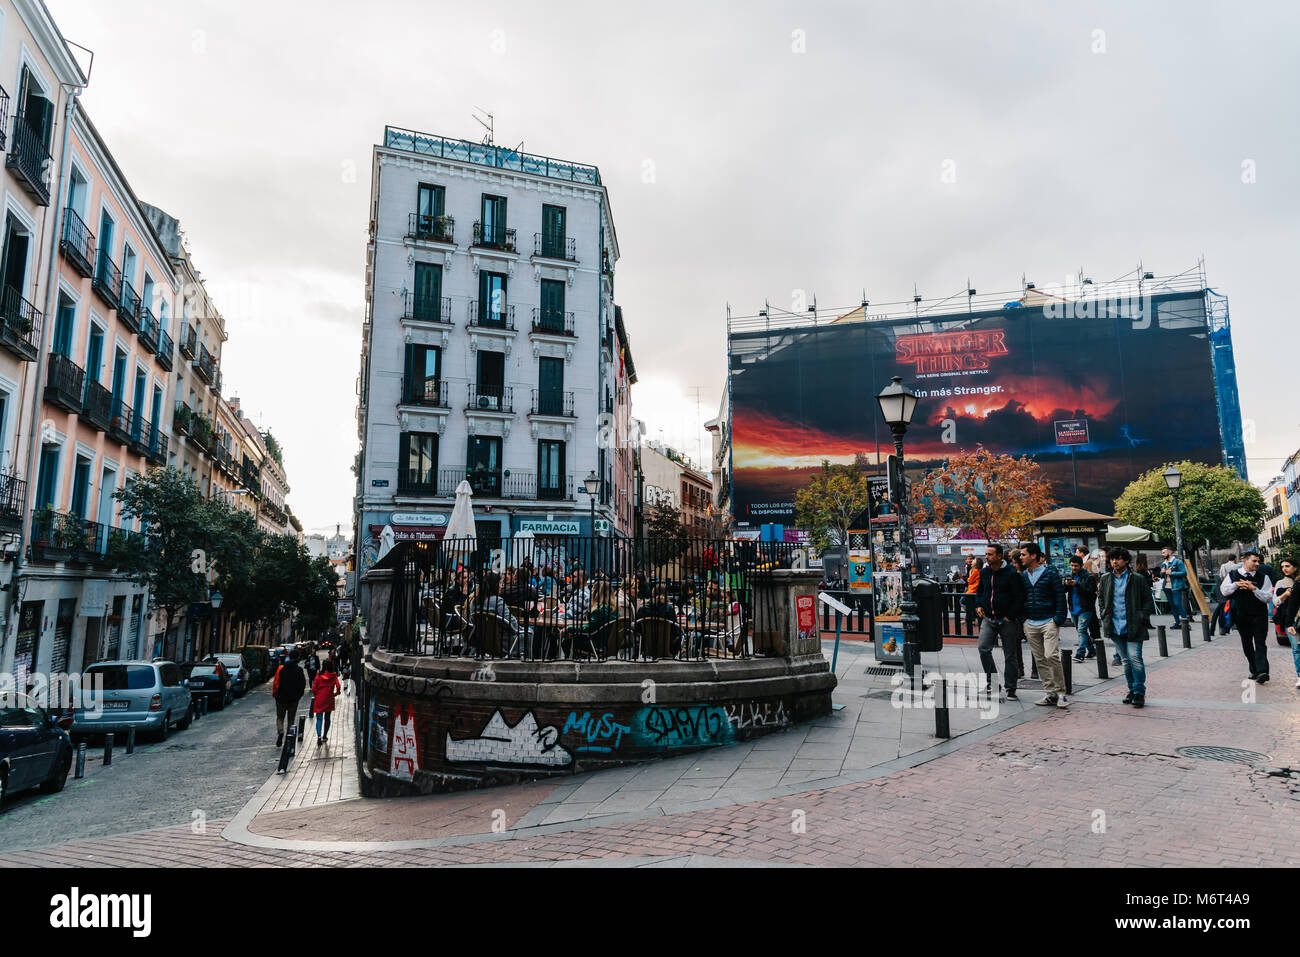 Madrid, Spagna - 3 Novembre 2017: Juan Pujol piazza nel quartiere di Malasaña in Madrid. Malasaña è uno dei quartieri più alla moda di Madrid, Foto Stock